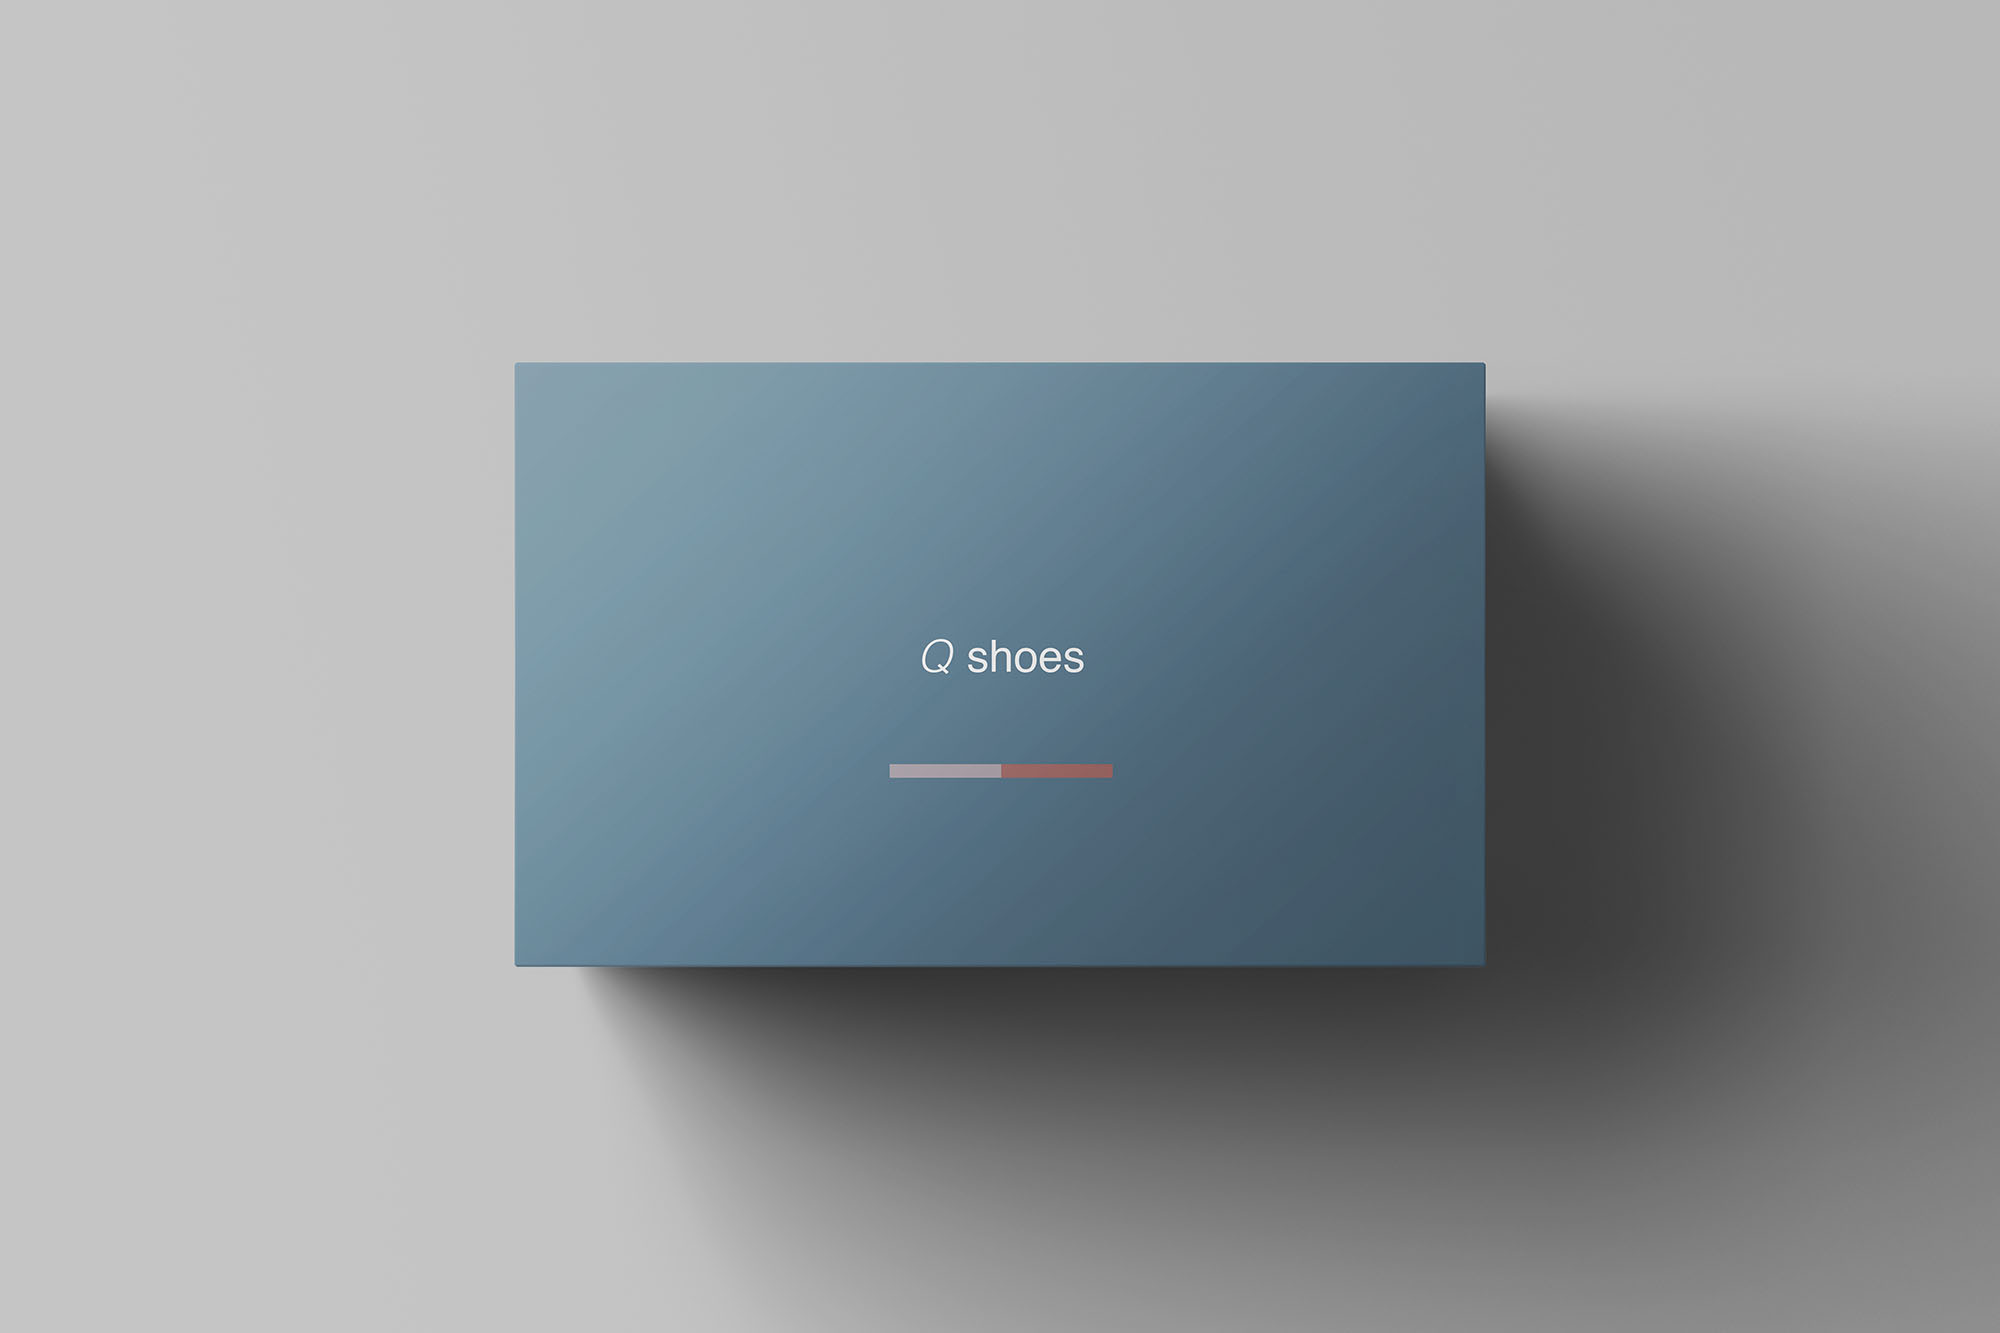 高端女鞋鞋盒外观设计图第一素材精选模板 Shoe Box Mockup插图(6)